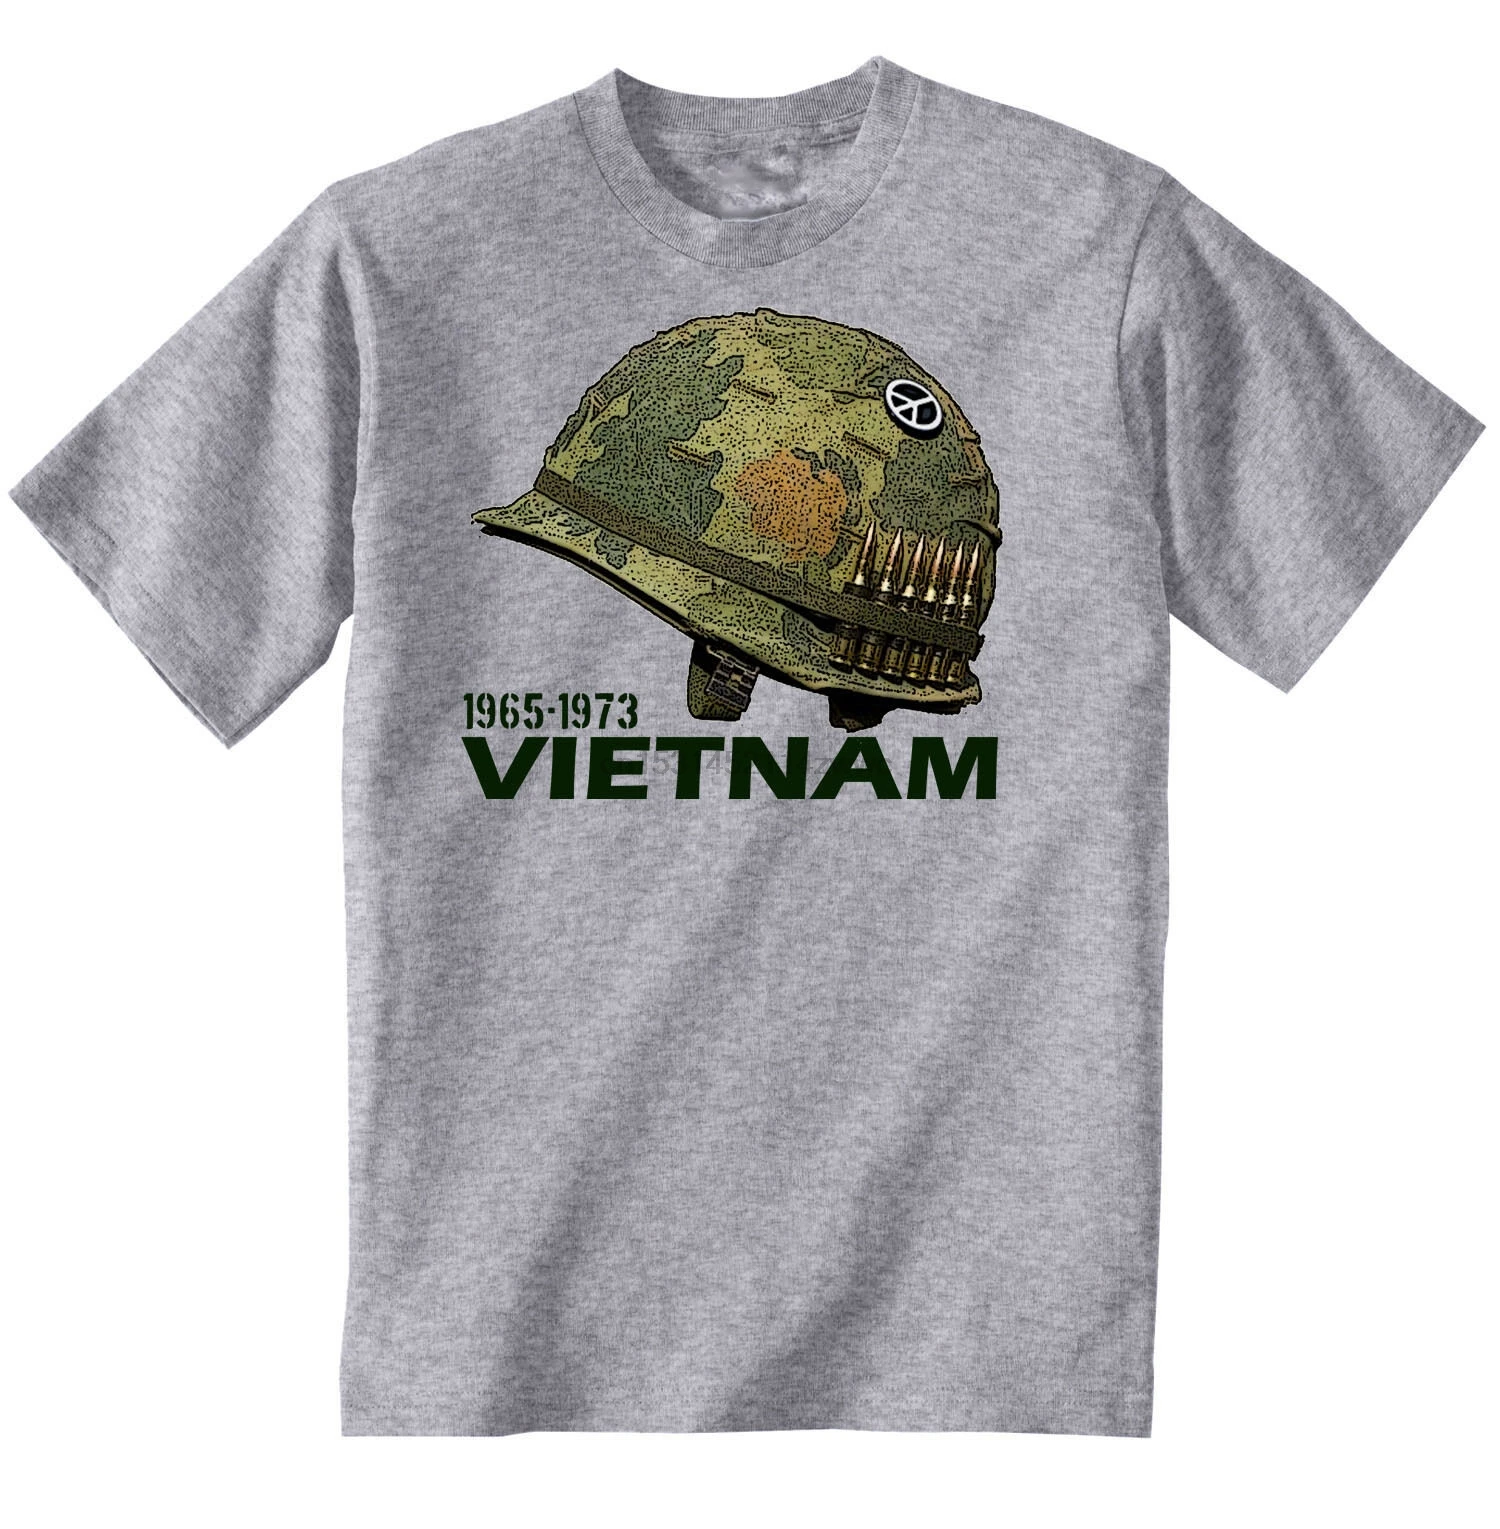 США Вьетнам яркая новинка удивительная серая футболка из хлопка 2020 Мужская